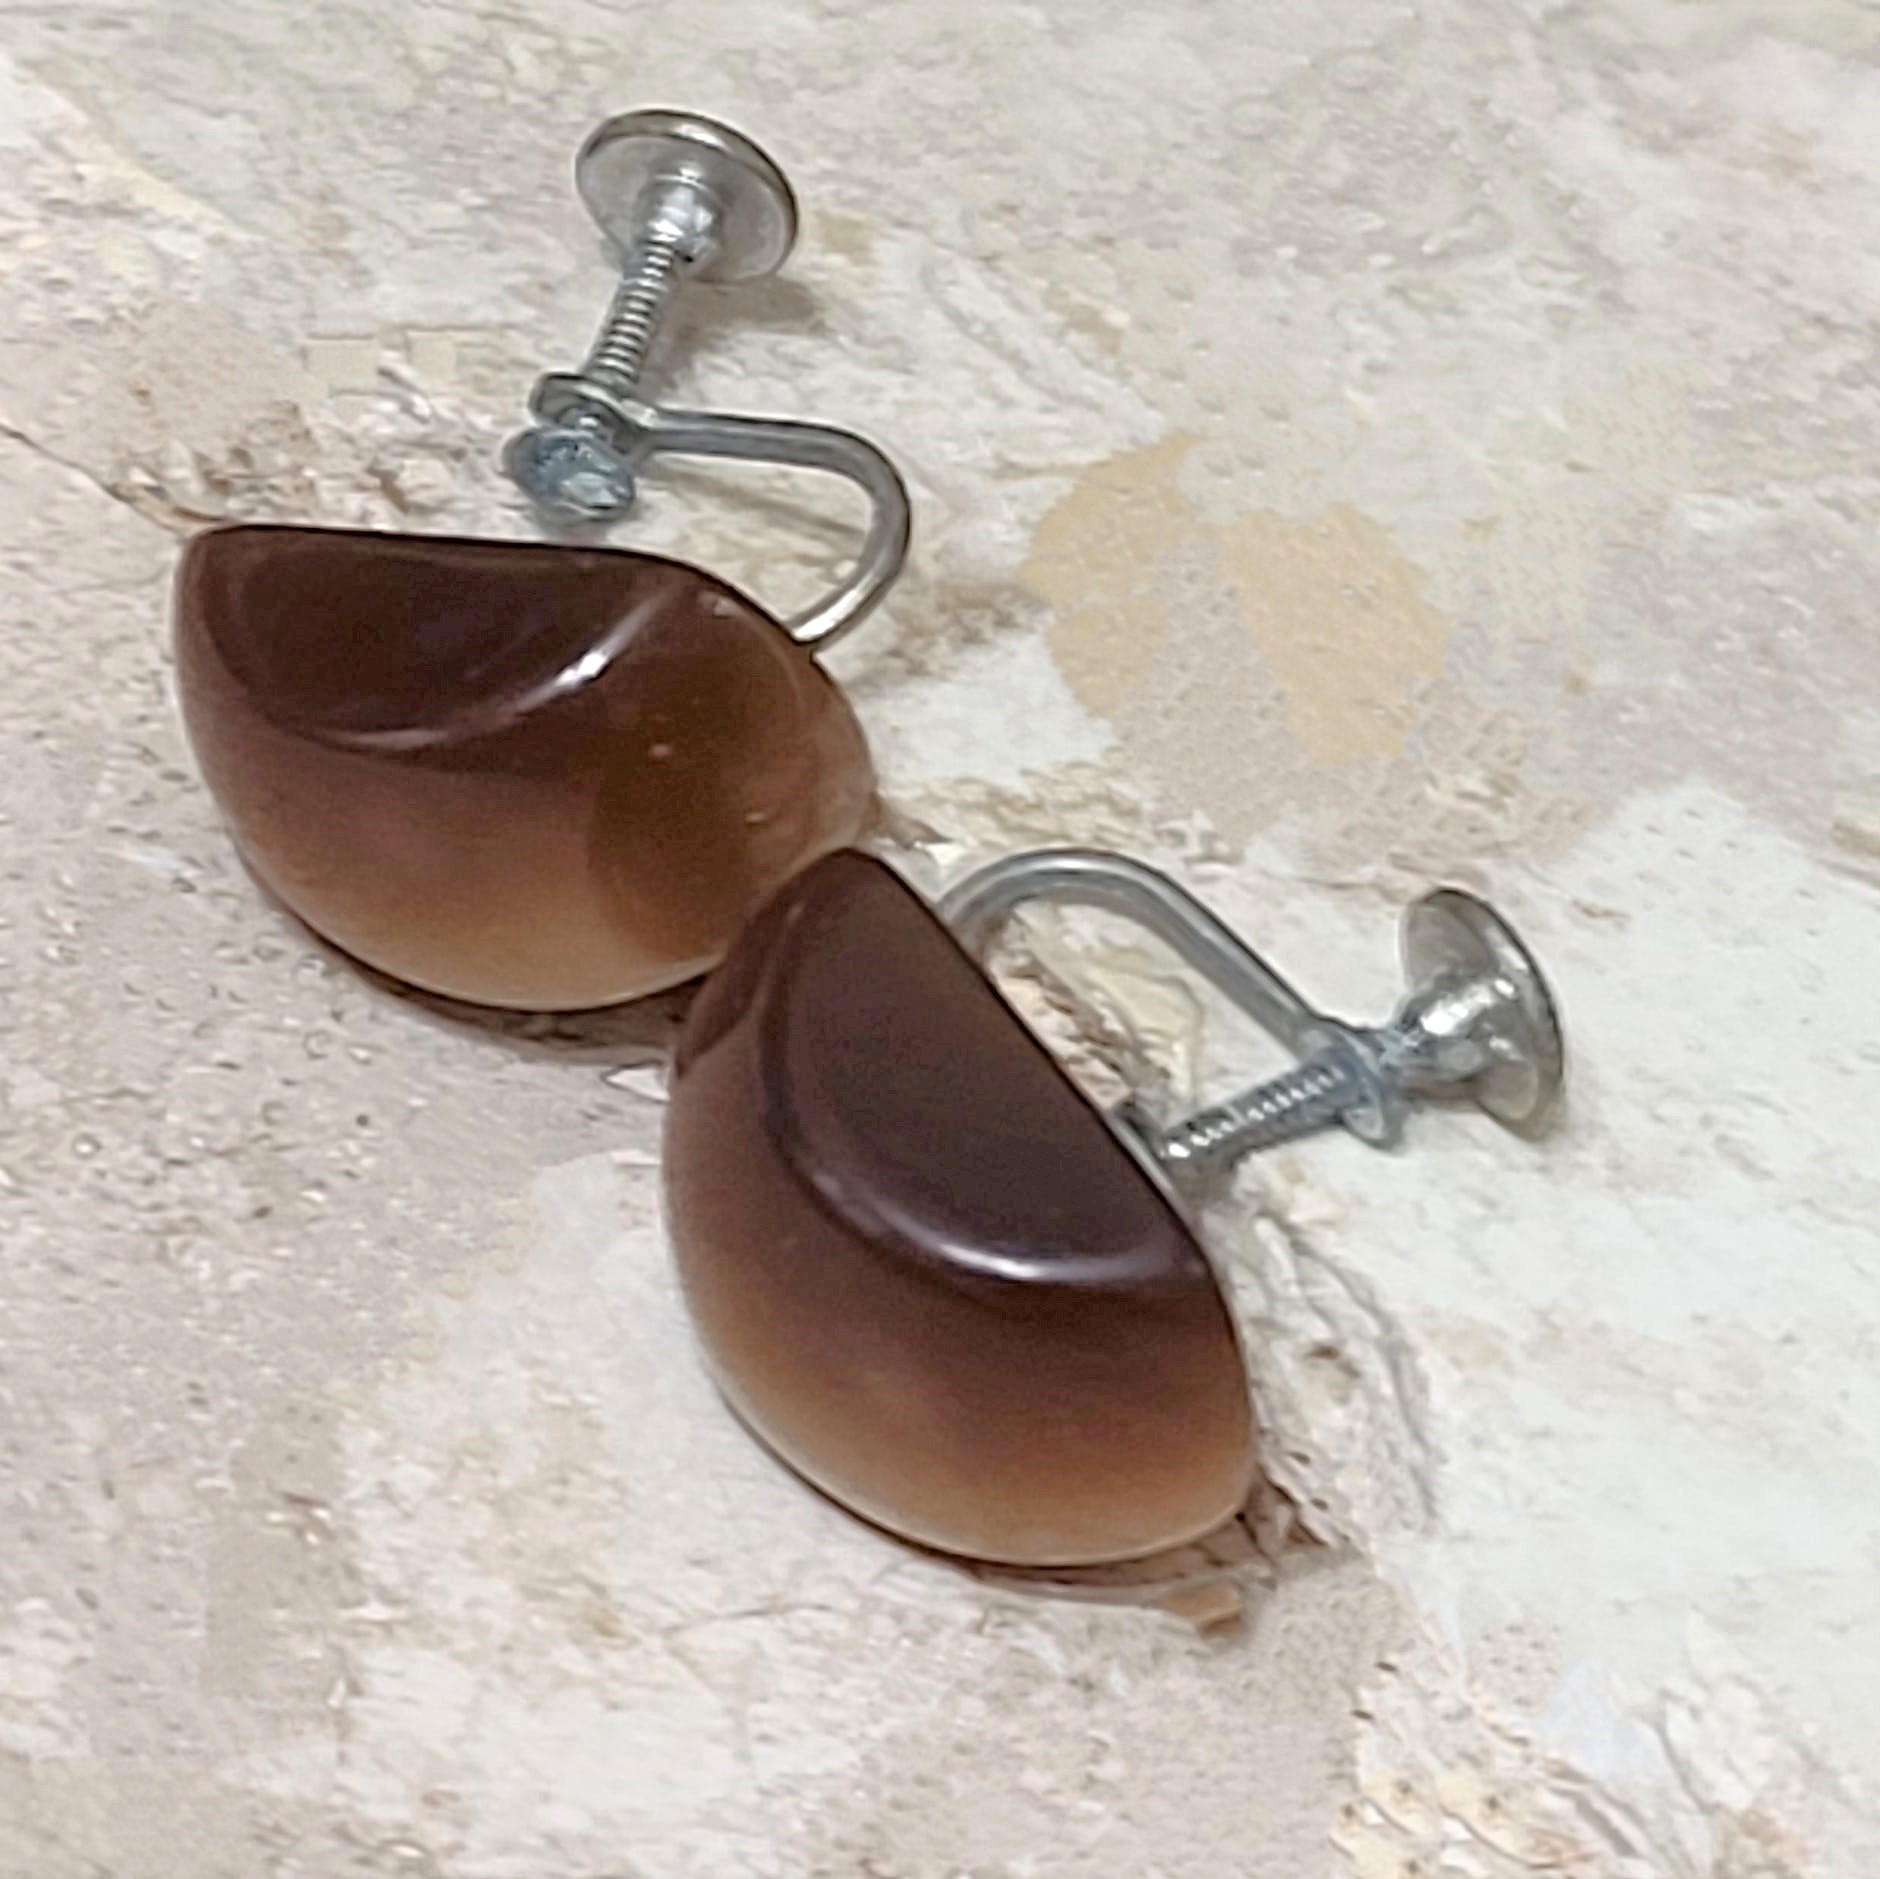 Vintage brown moonglow earrings - screwbacks